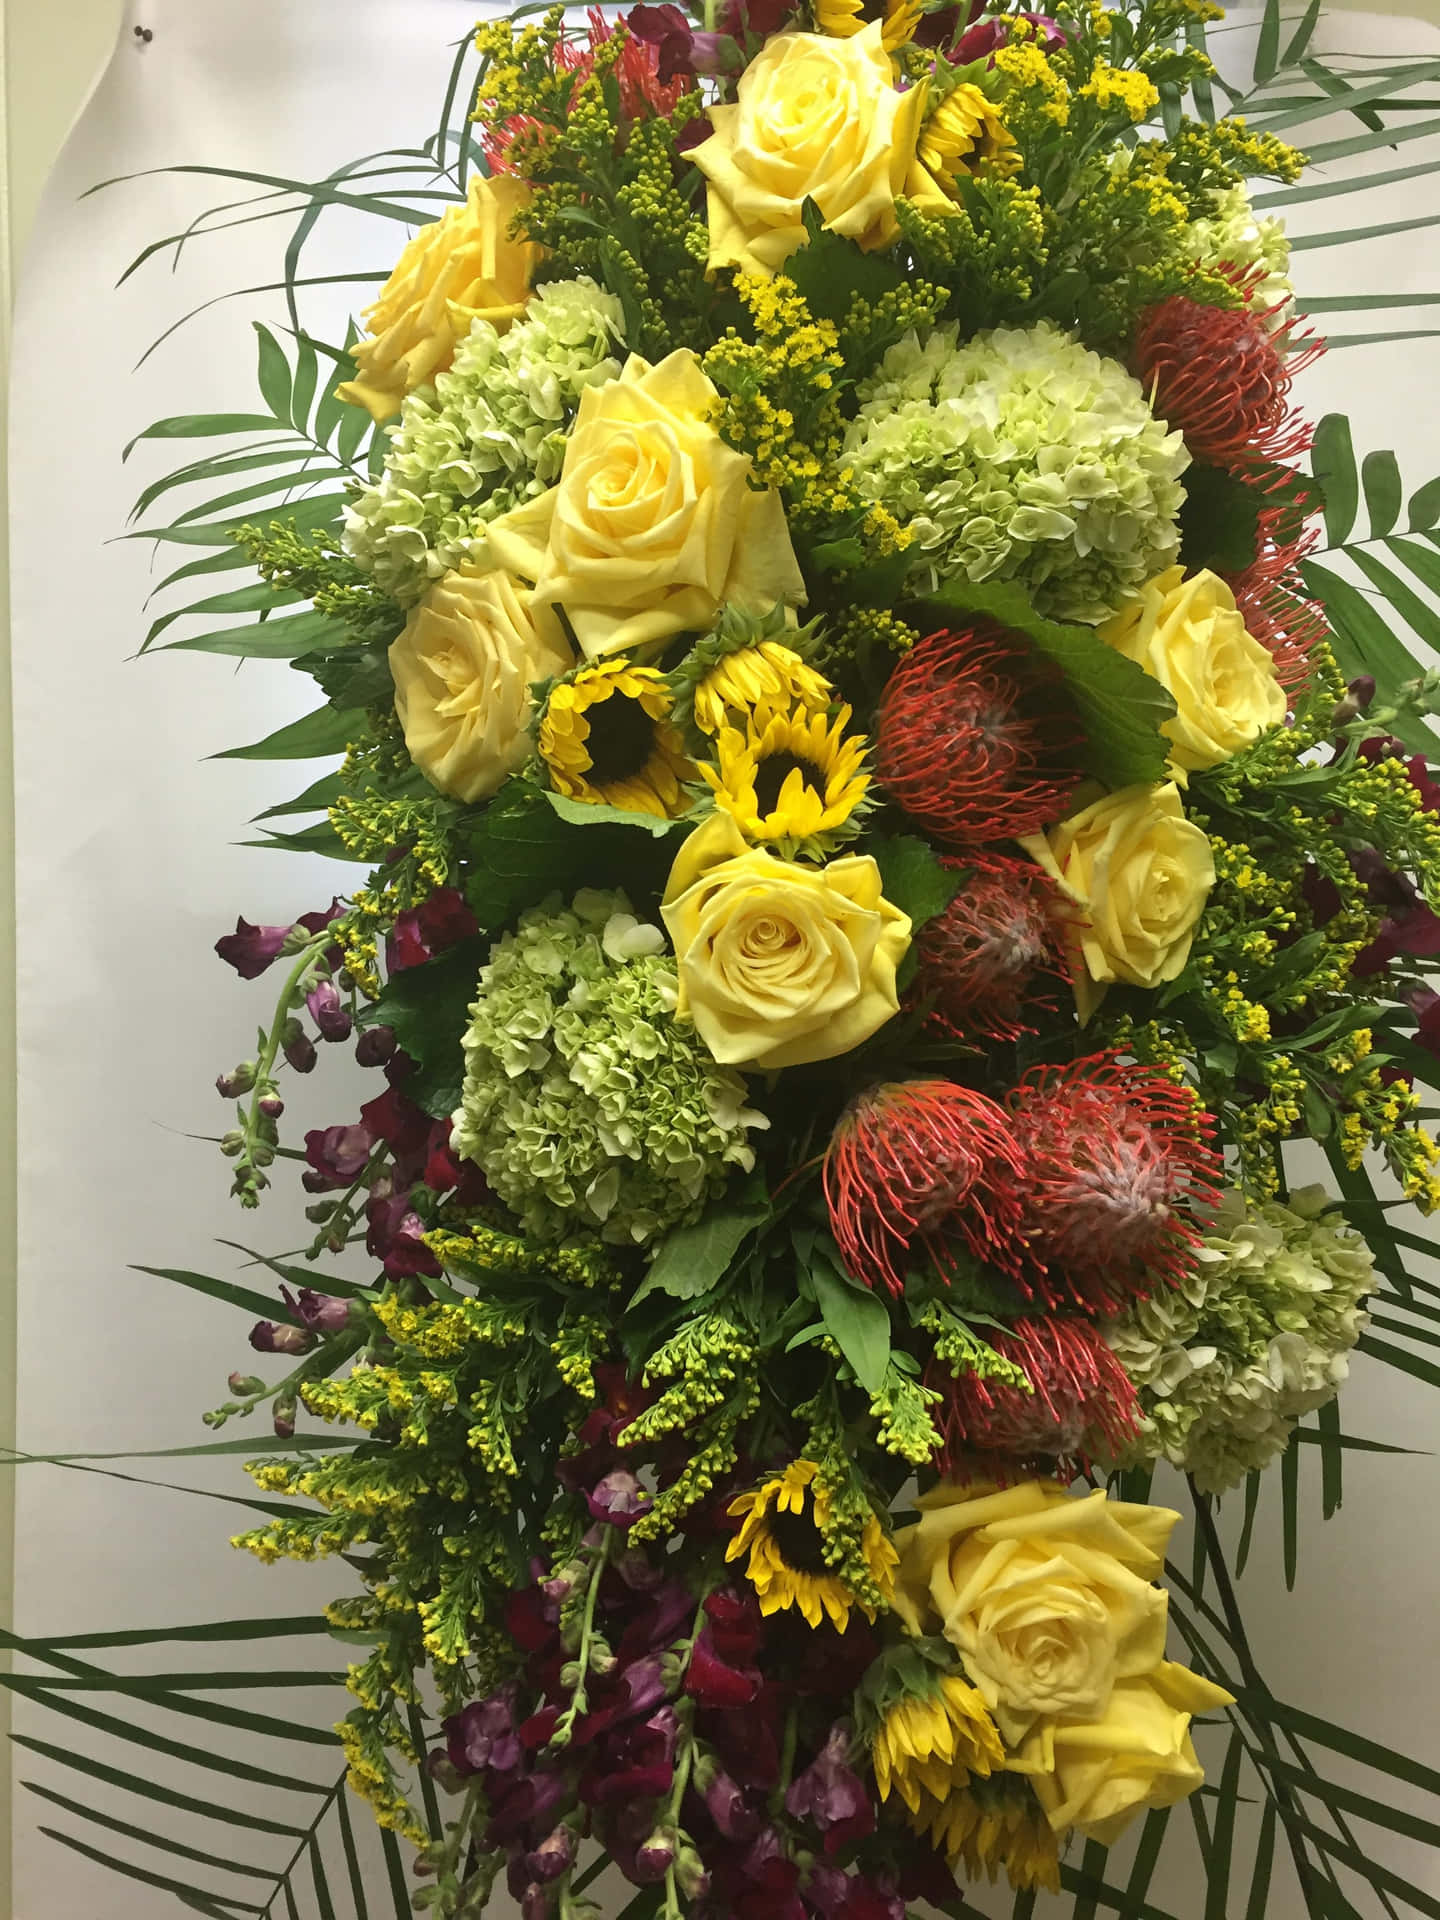 Envíatus Condolencias Con Un Elegante Arreglo Floral Para El Funeral.